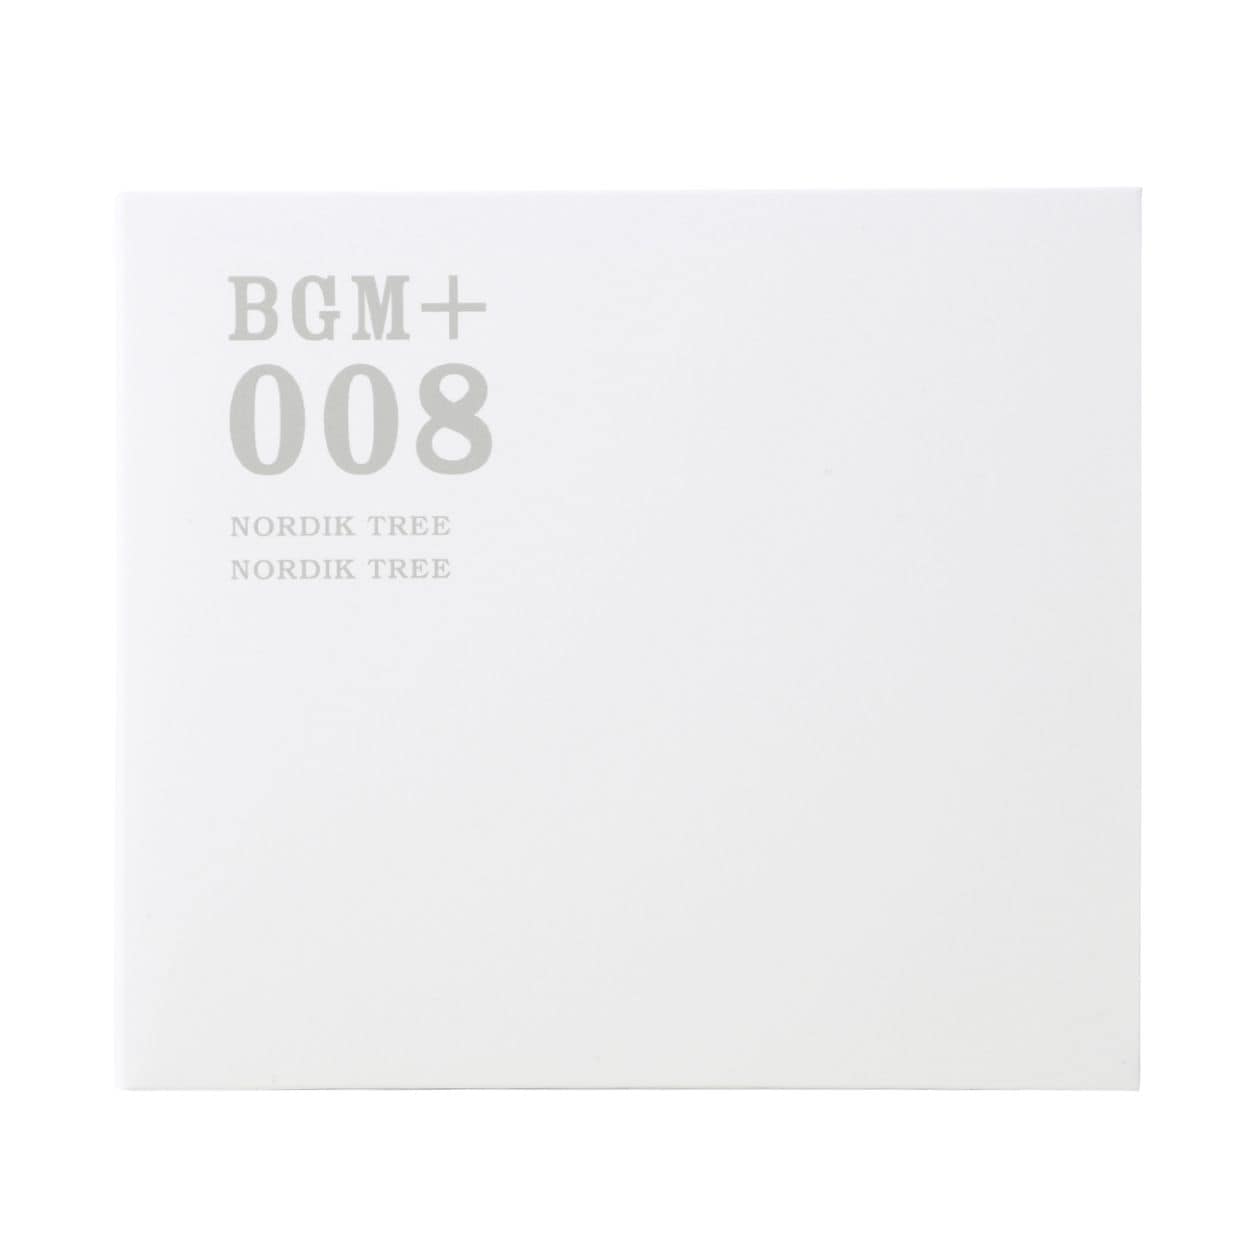 무인양품 일본 CD 음악 BGM +008 NORDIK TREE